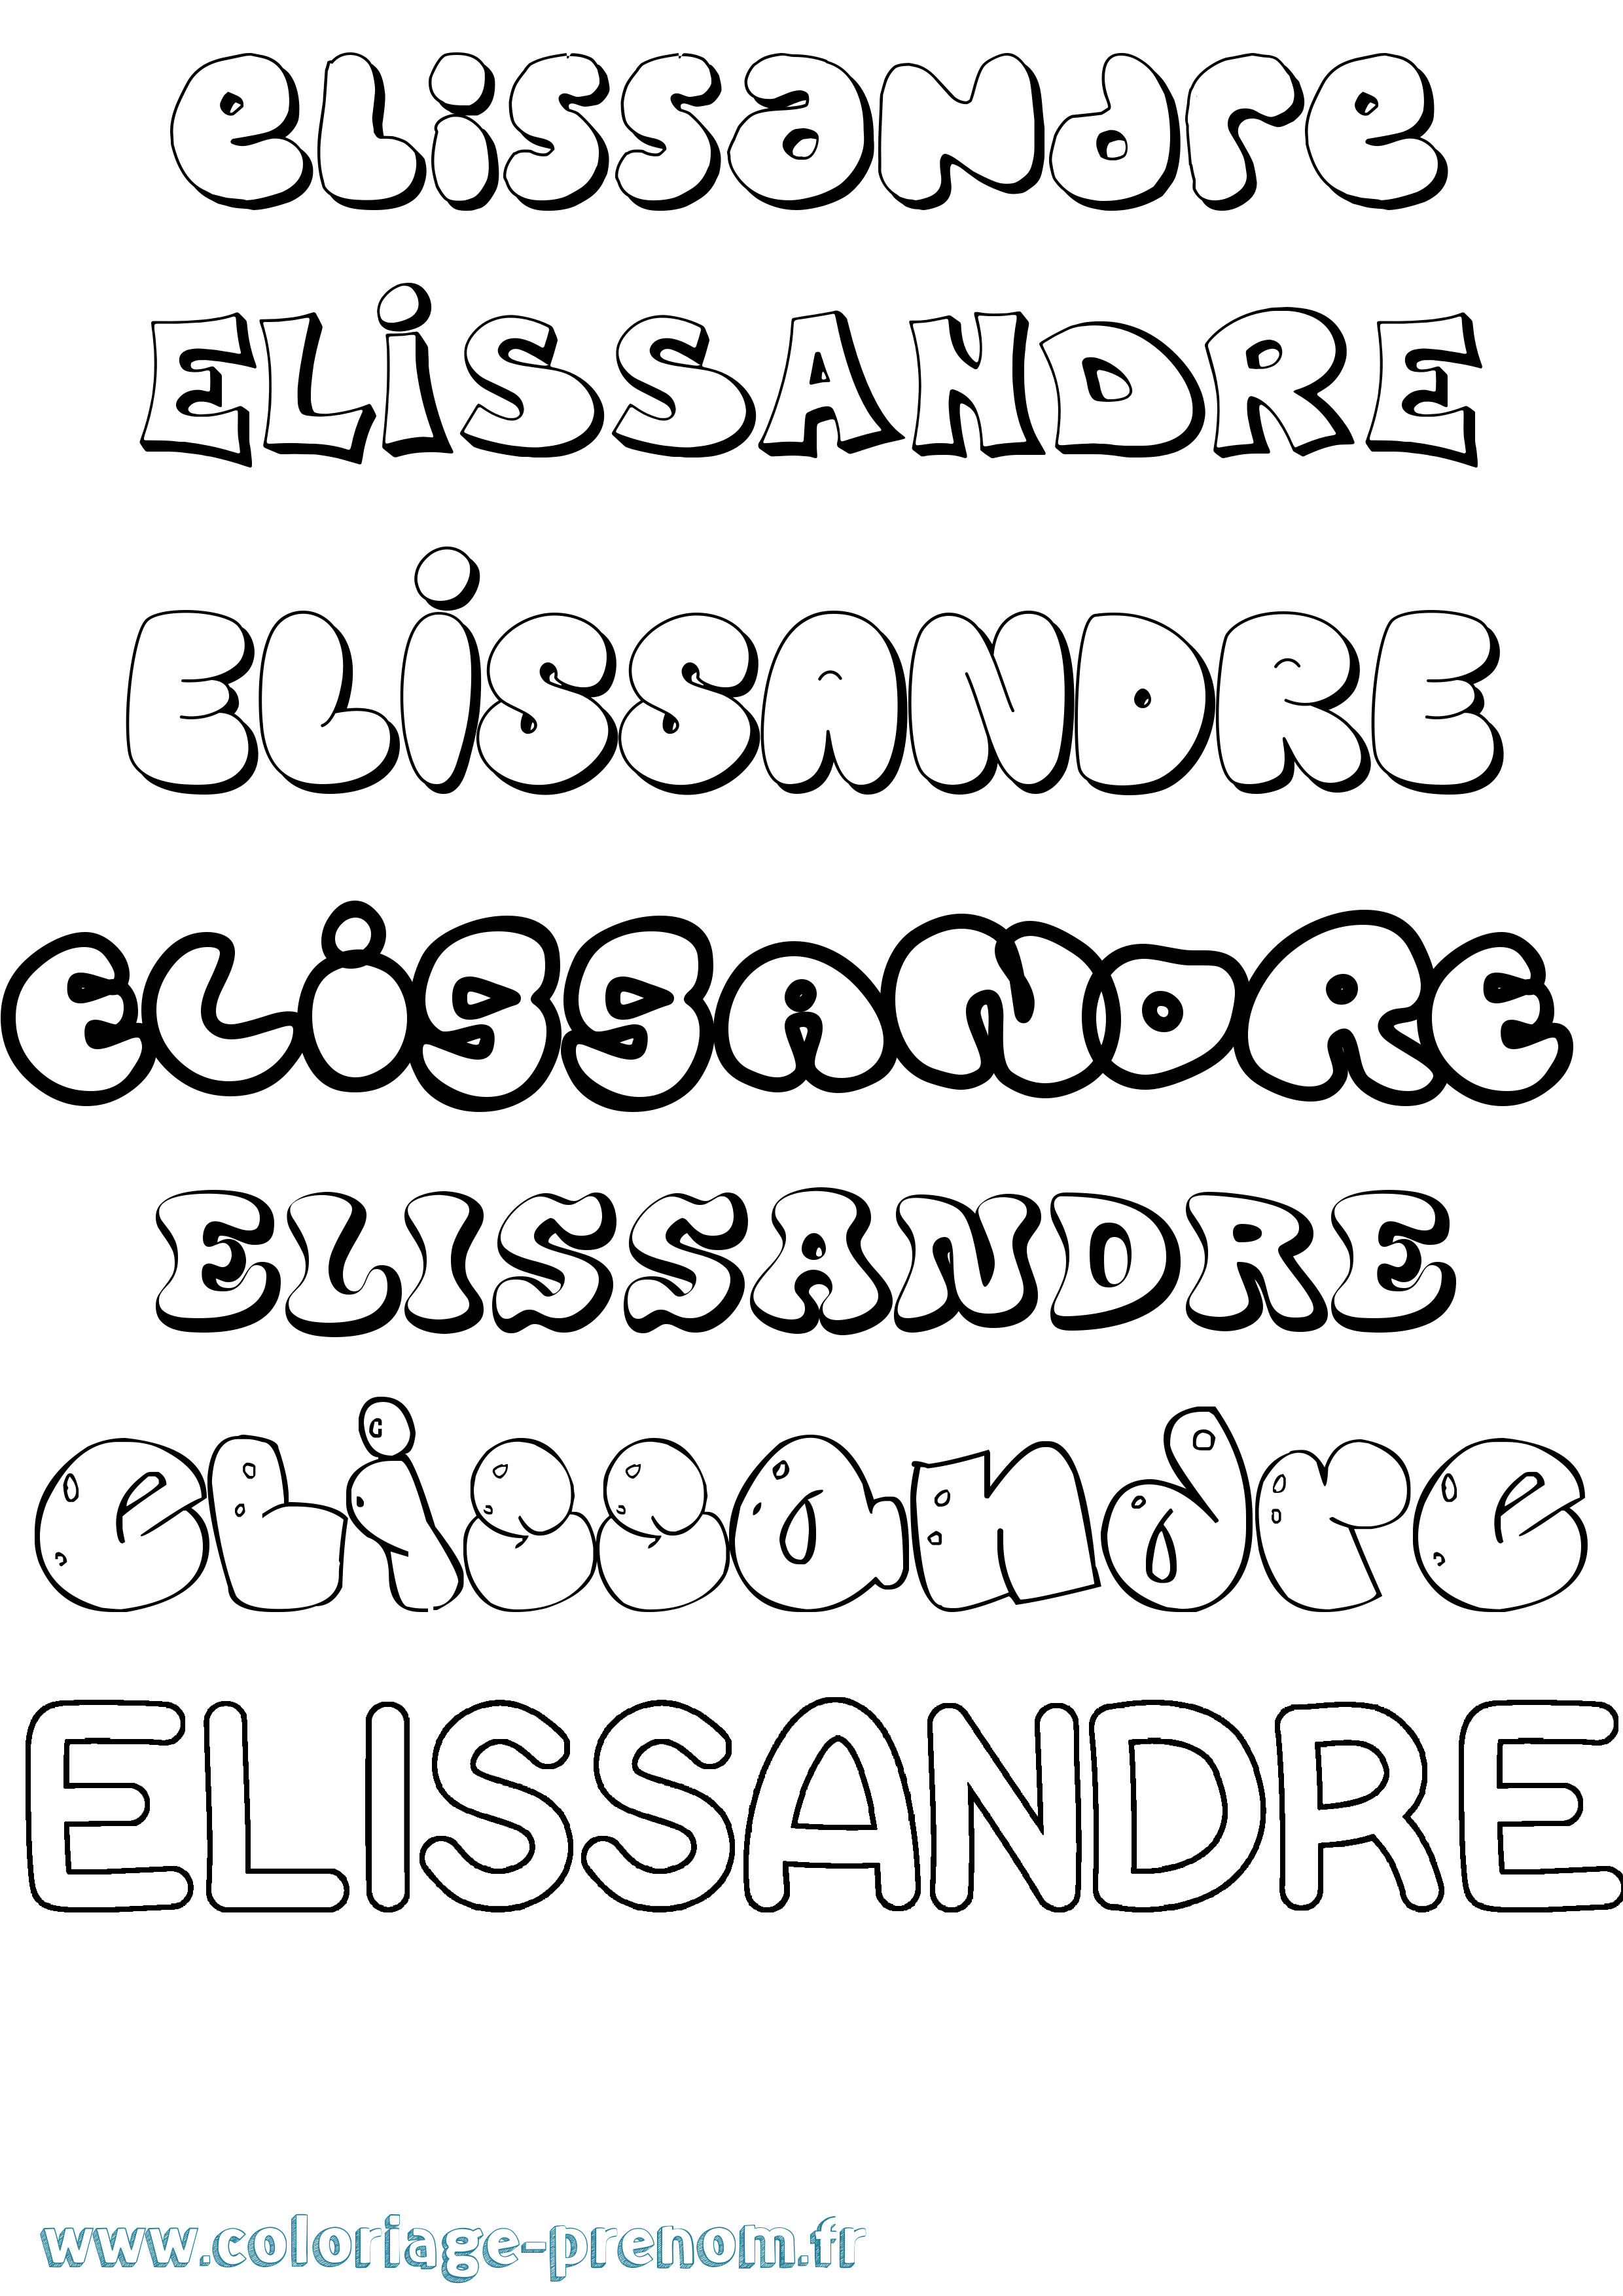 Coloriage prénom Elissandre Bubble